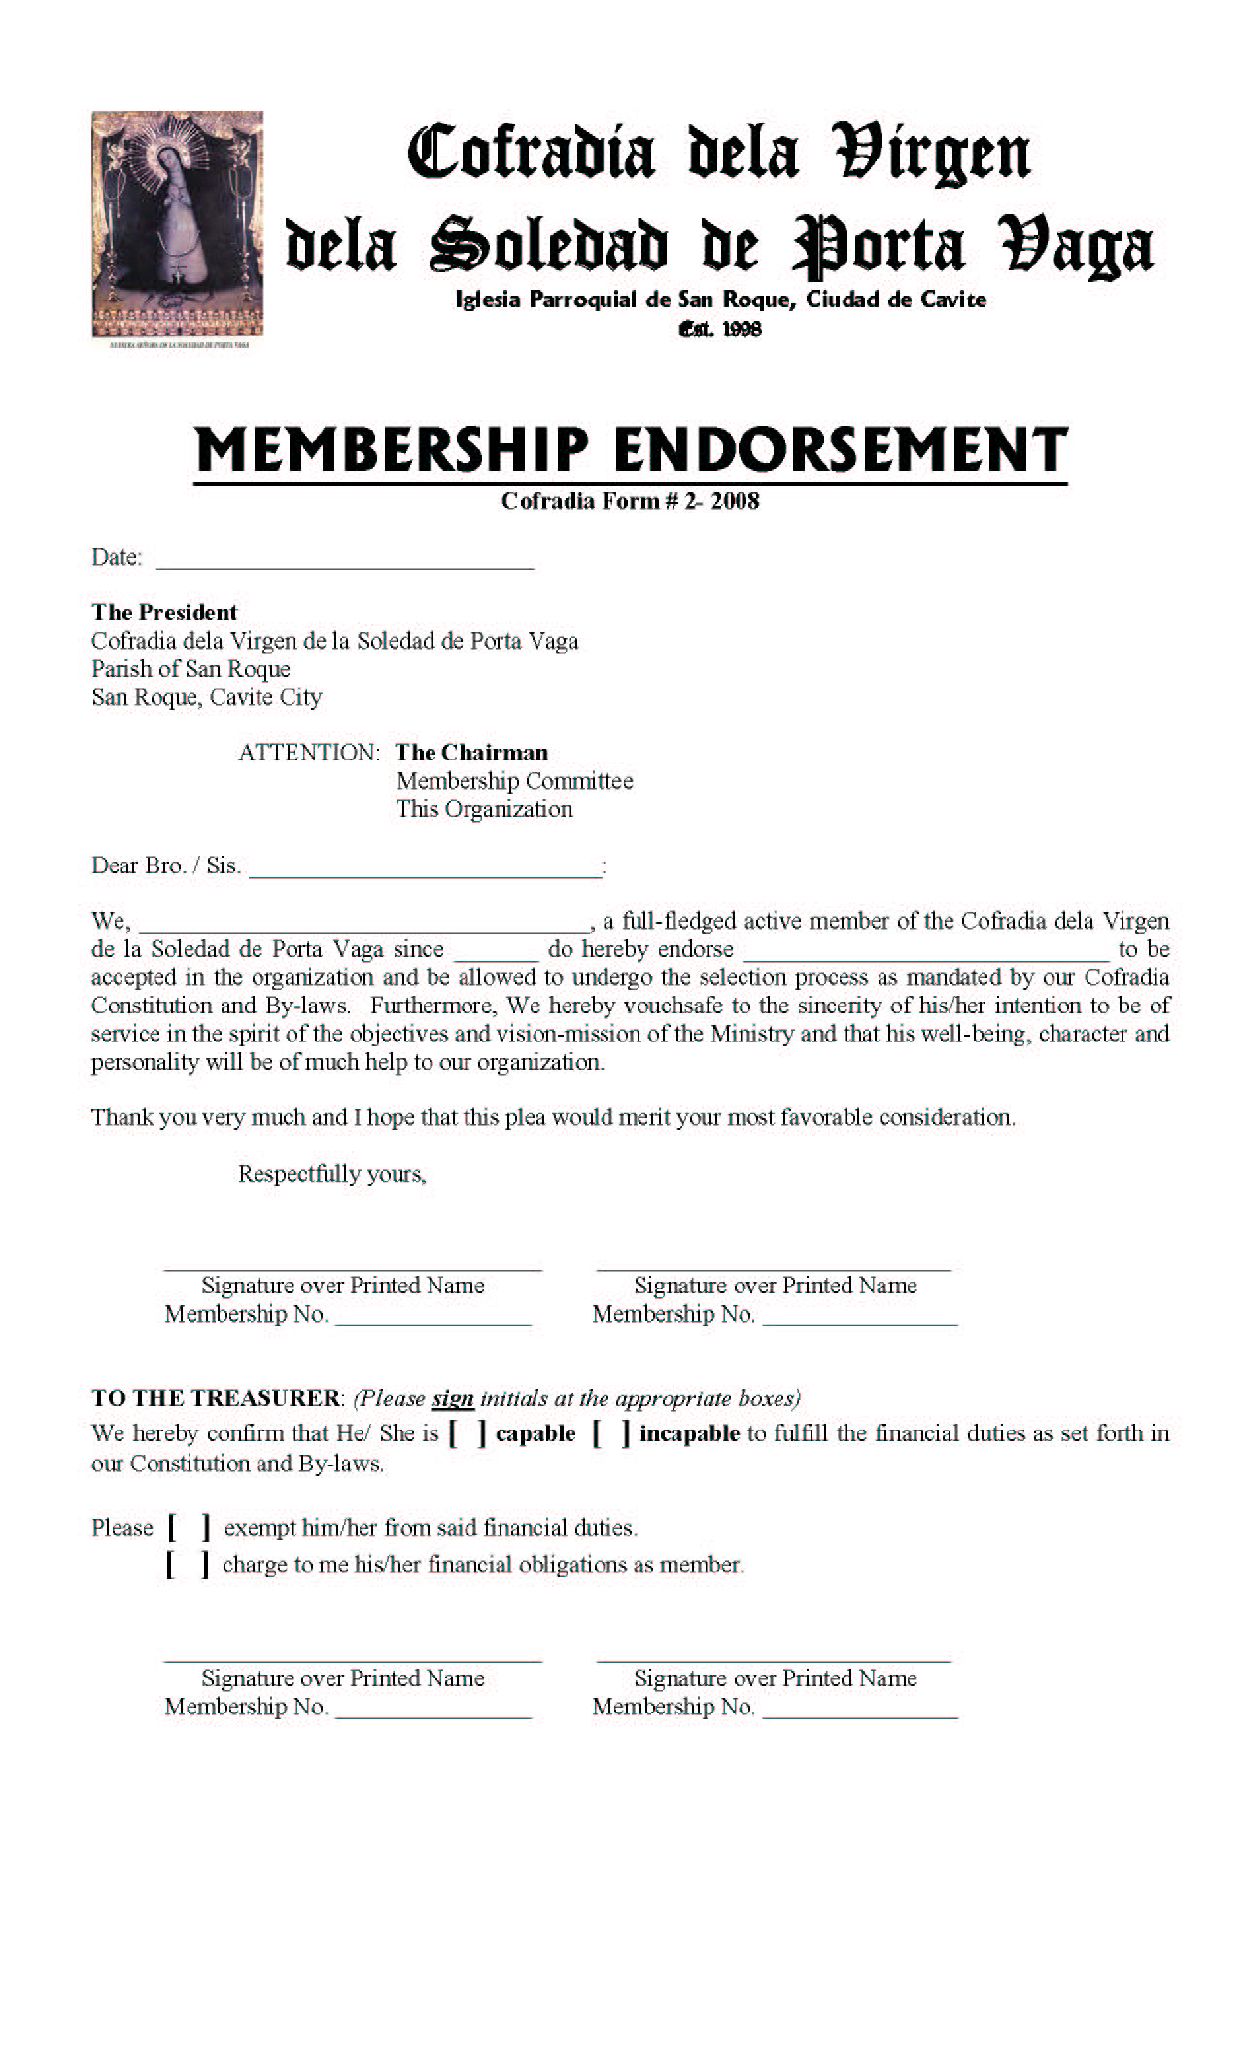 membershipENDROSEMENT-SOLEDAD